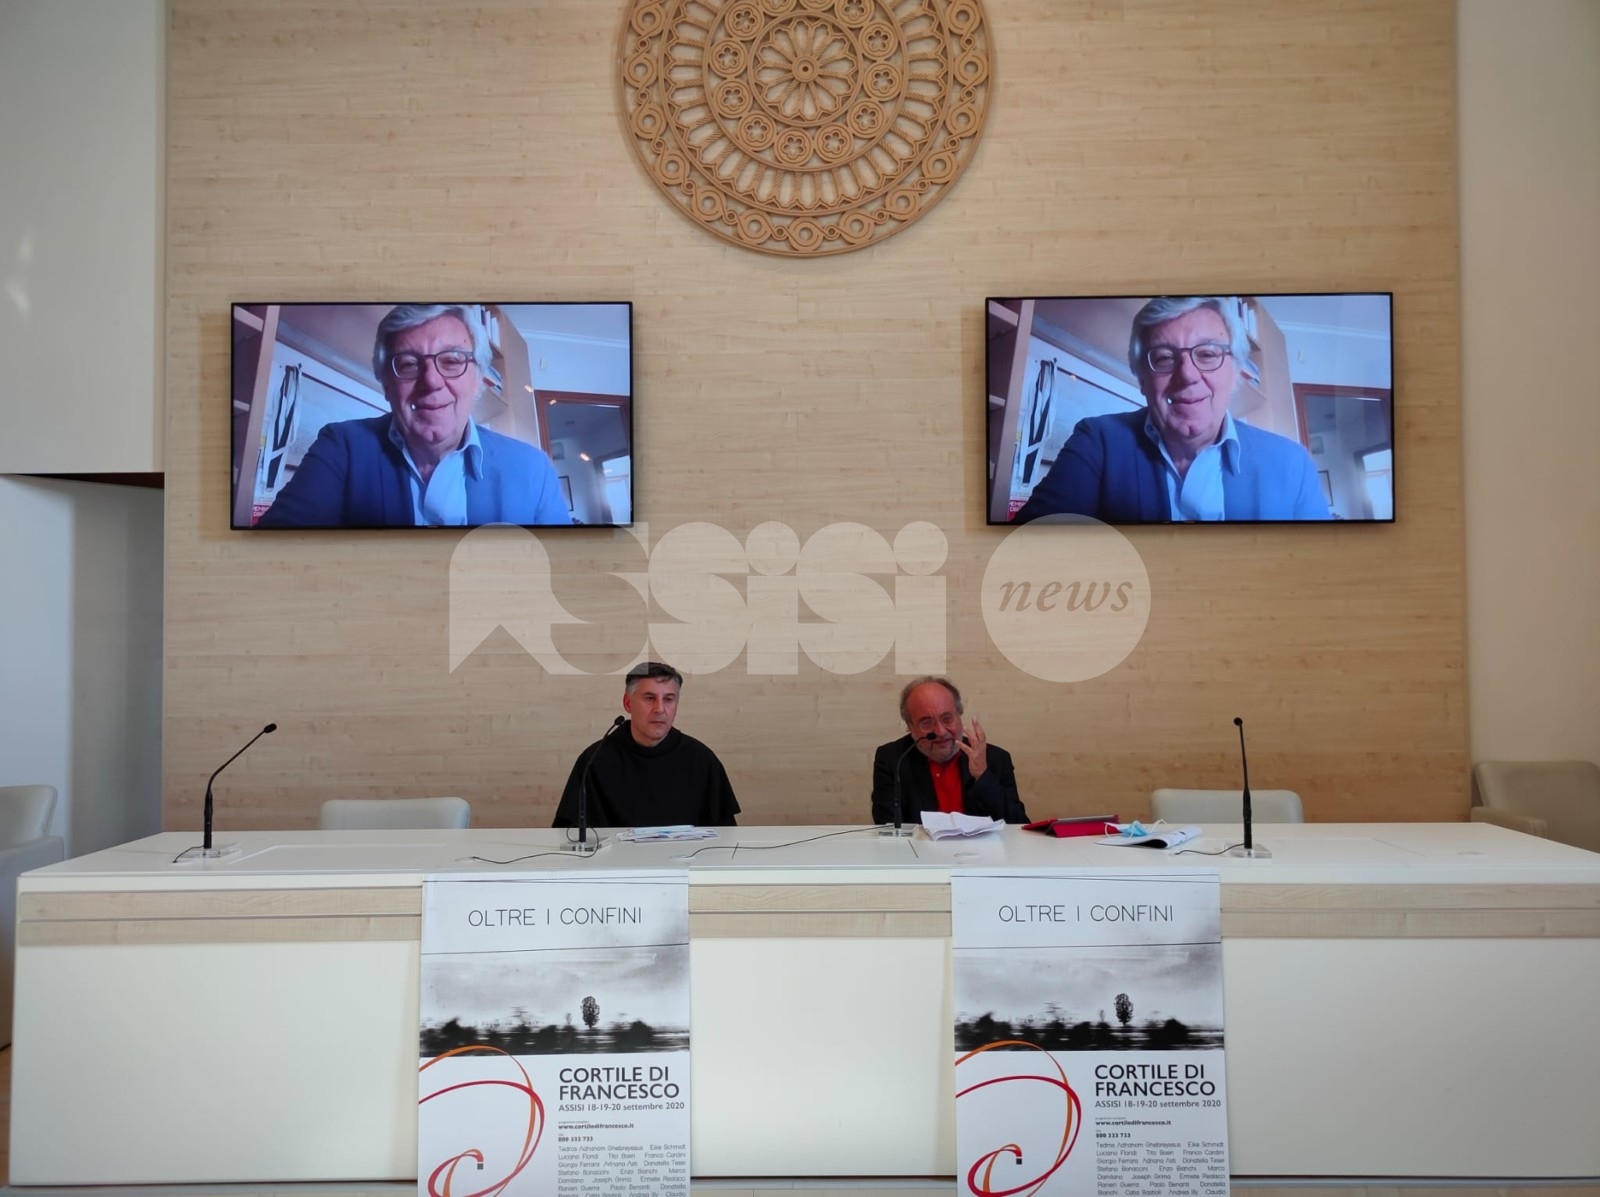 Giancarlo Siani, l'omaggio al Cortile di Francesco 2020 a 35 anni dalla morte (foto)